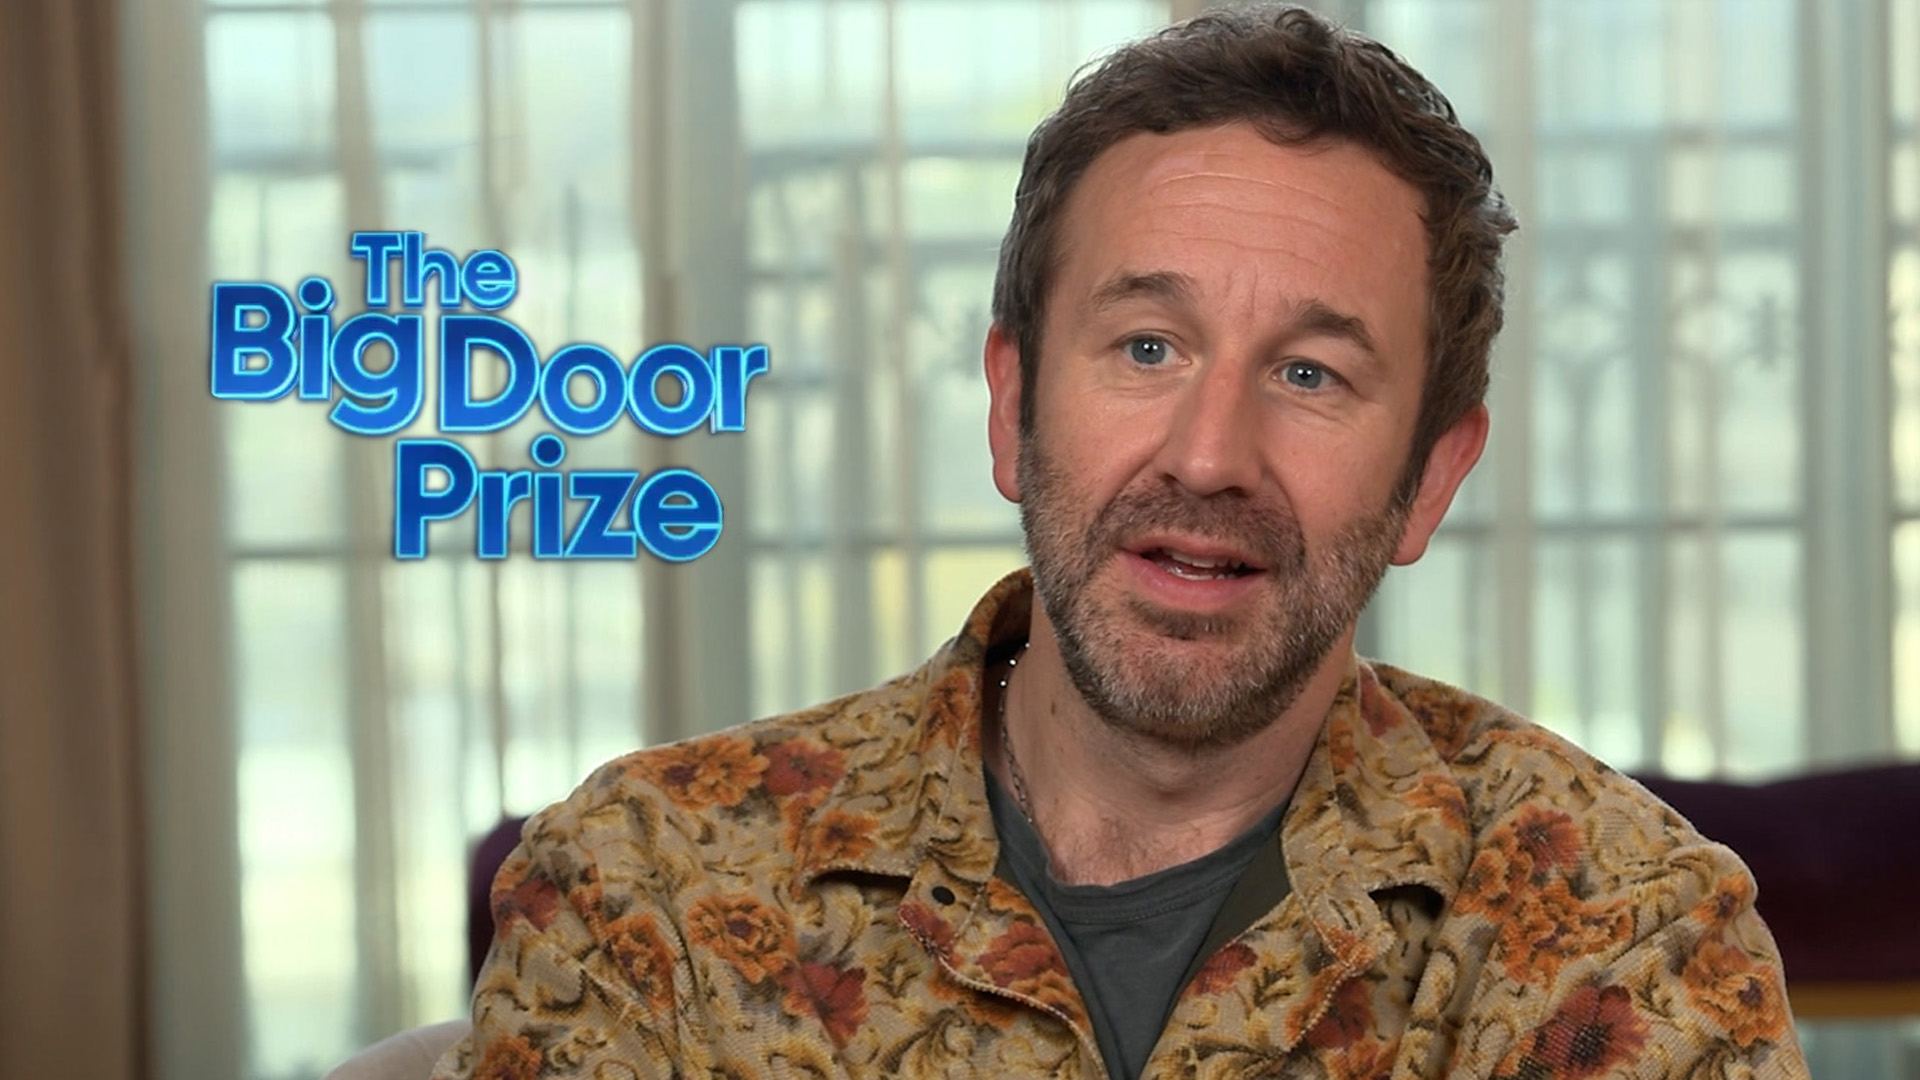 Chris O’Dowd, protagonista de “The Big Door Prize”, a solas con Infobae por el estreno de la serie